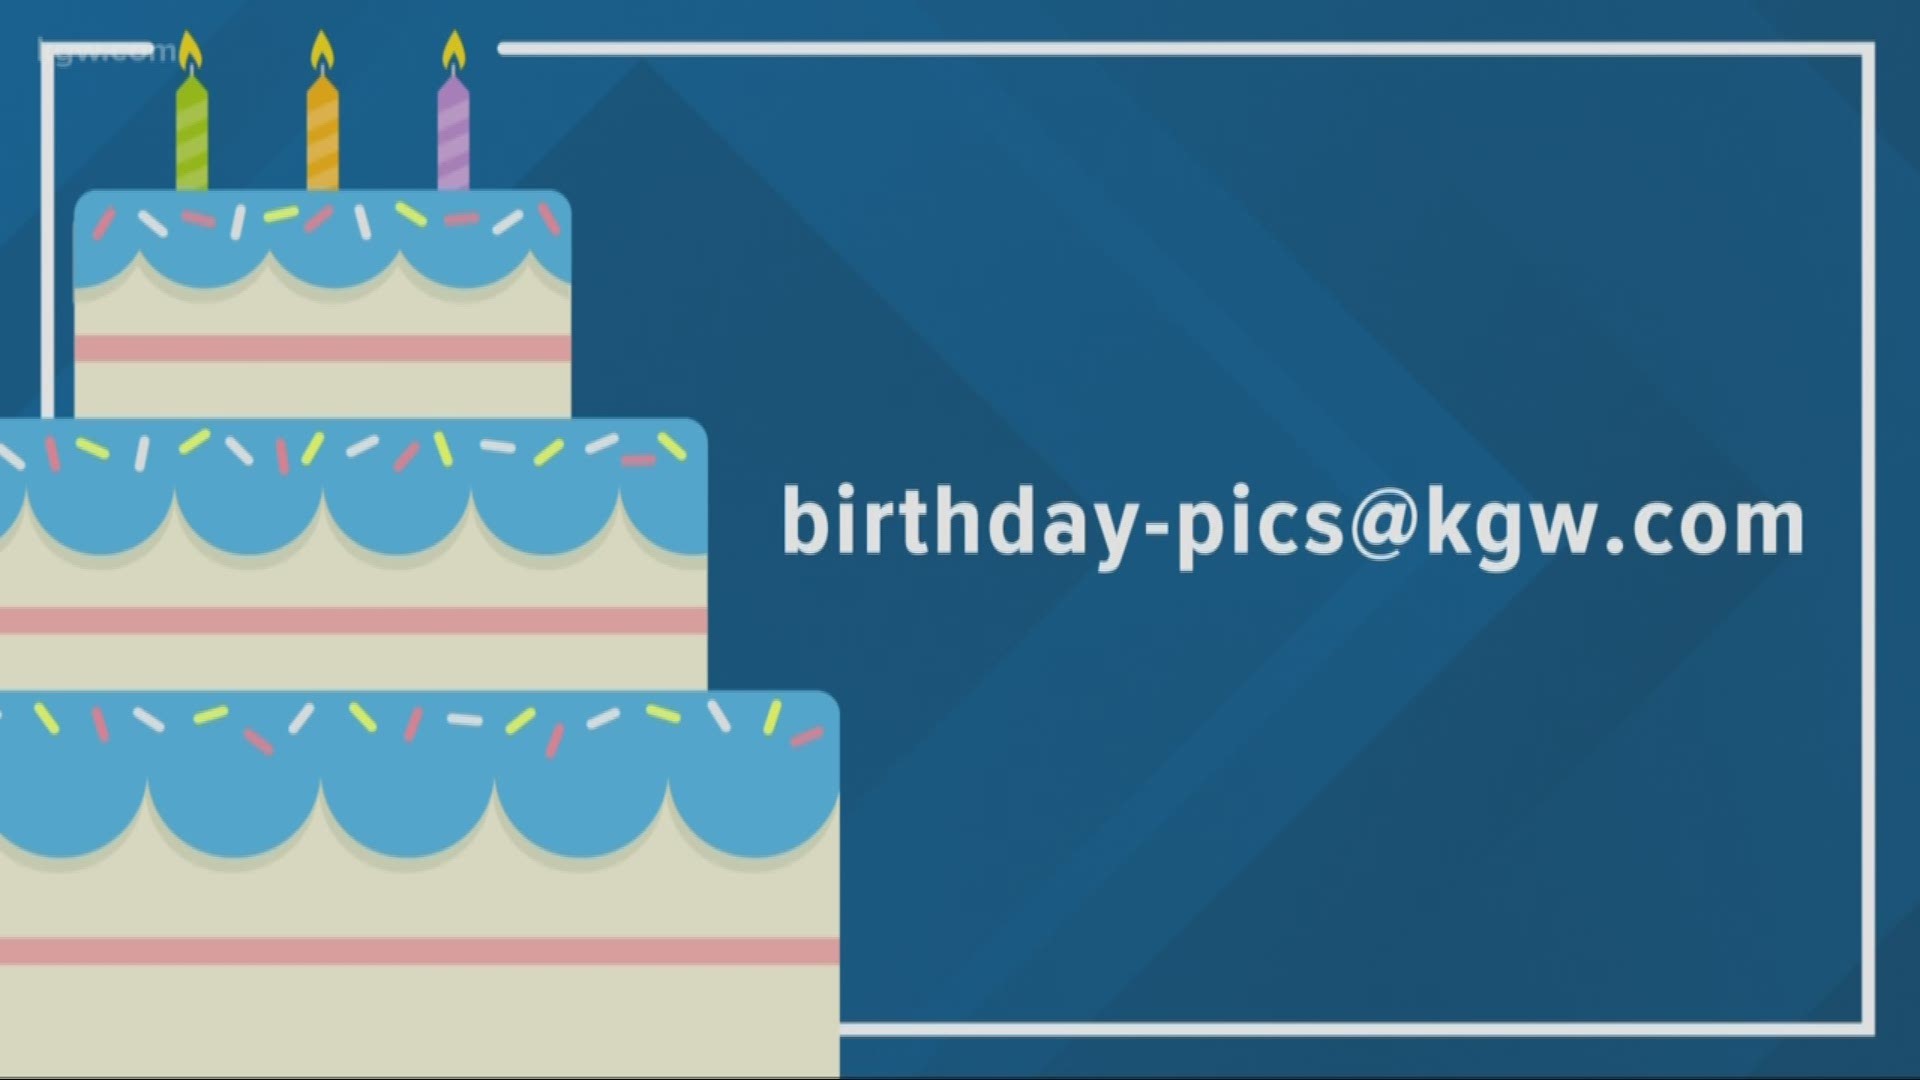 KGW viewer birthdays: 7-15-19